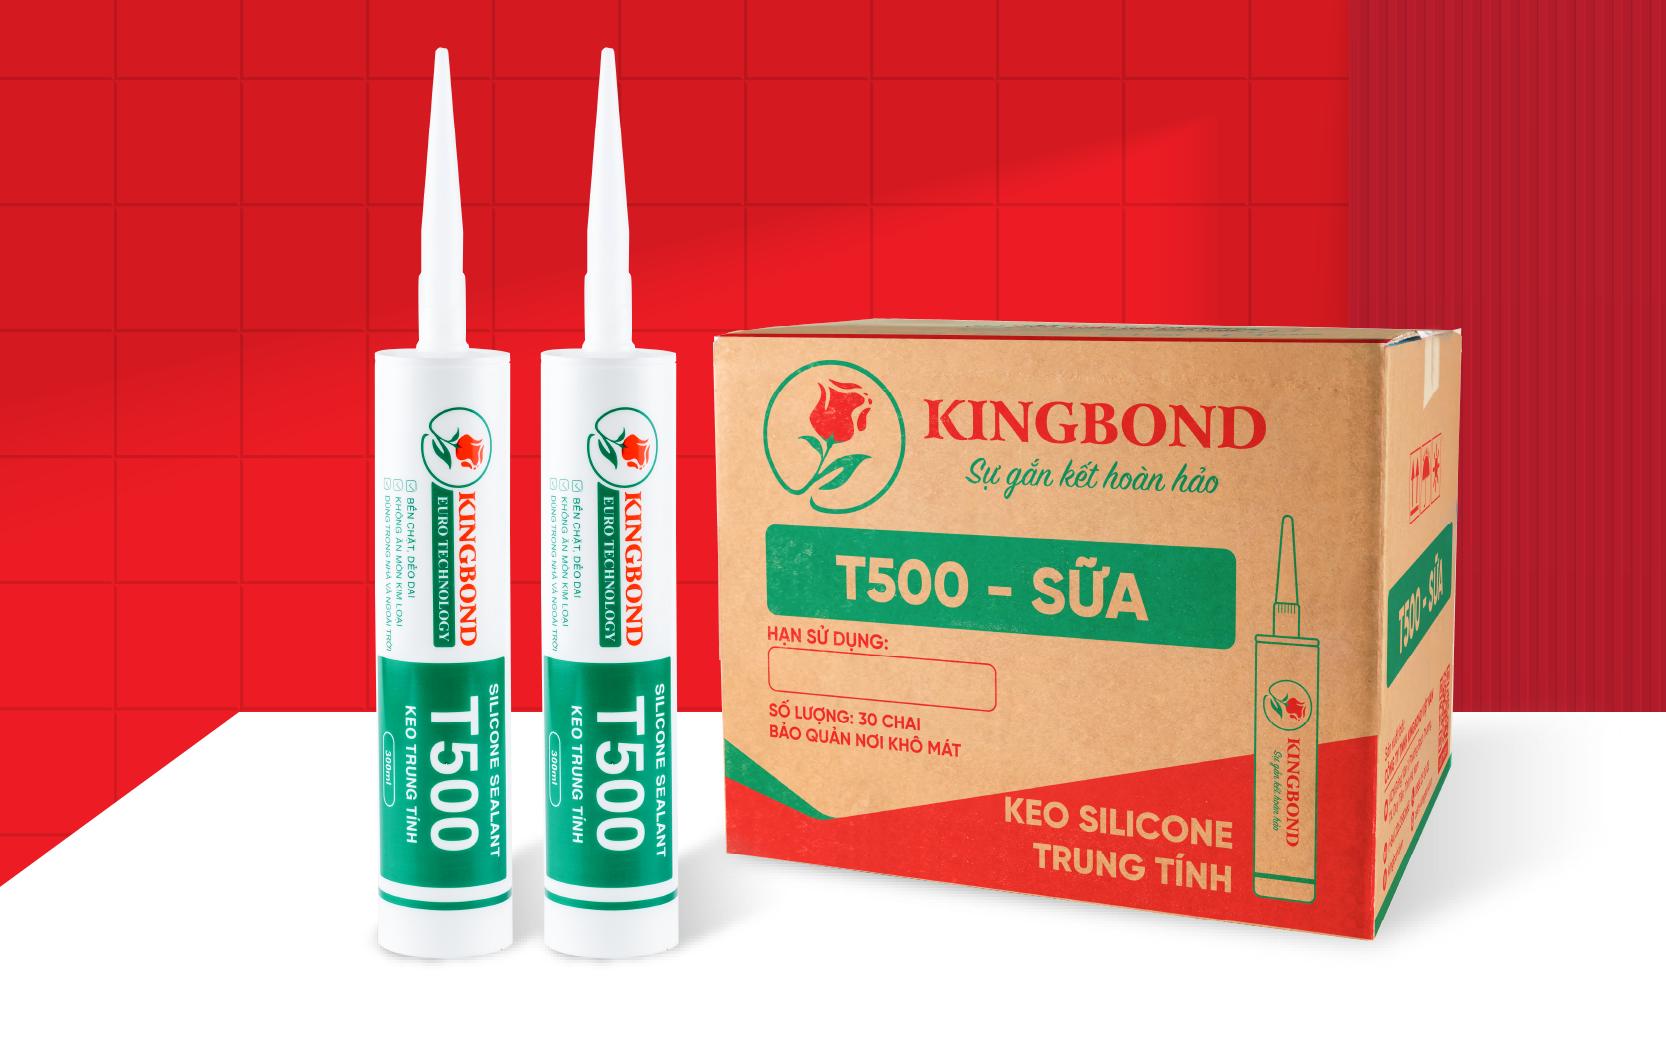 Keo silicone trung tính A500 sữa - Công Ty TNHH Kingbond Việt Nam